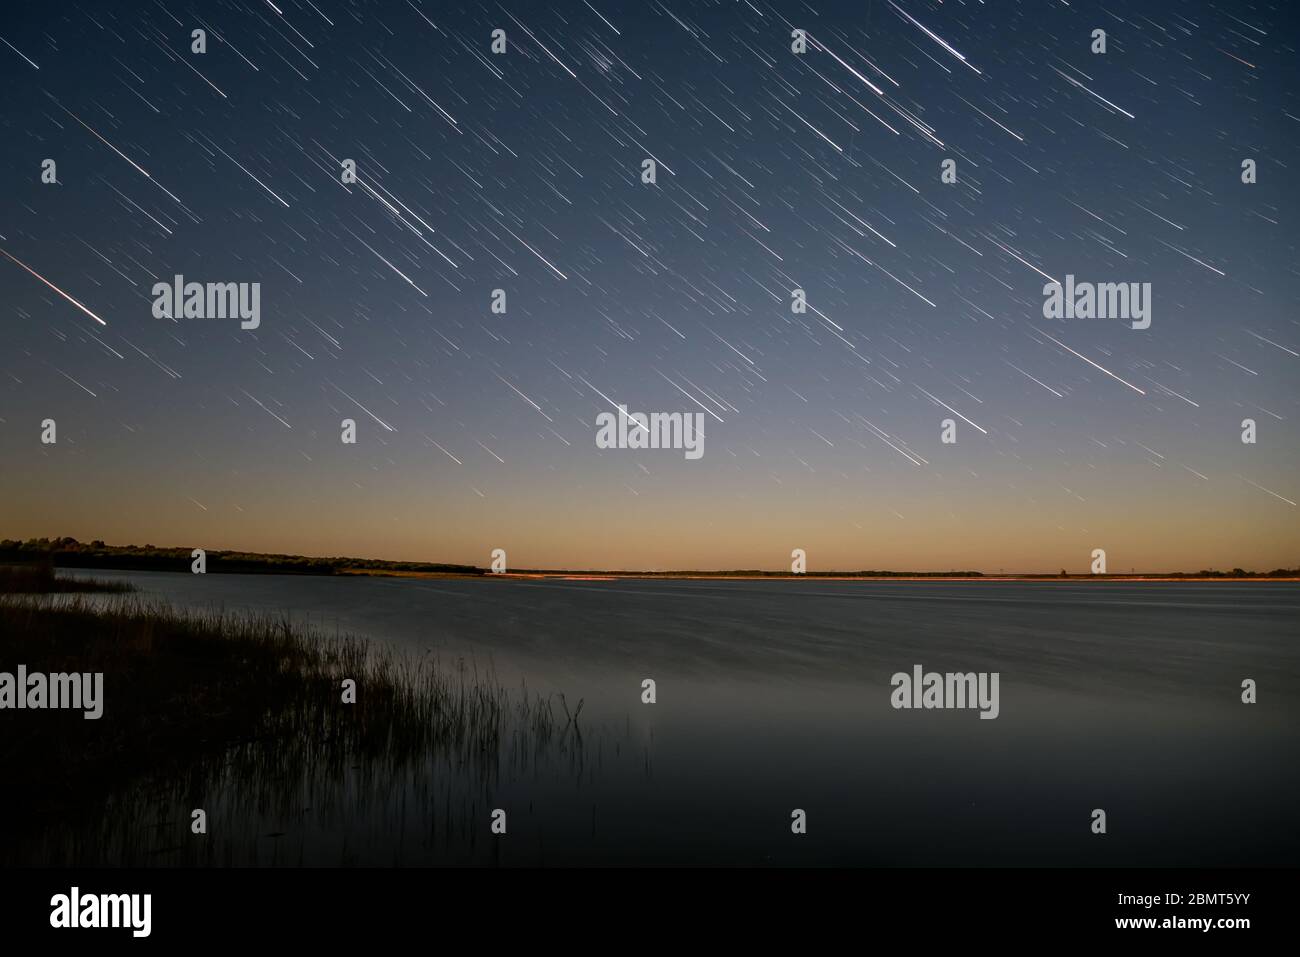 Schöner Blick auf den Nachthimmel mit Sternen in Form von Spuren über dem See und Gras im Wasser im Vordergrund Stockfoto